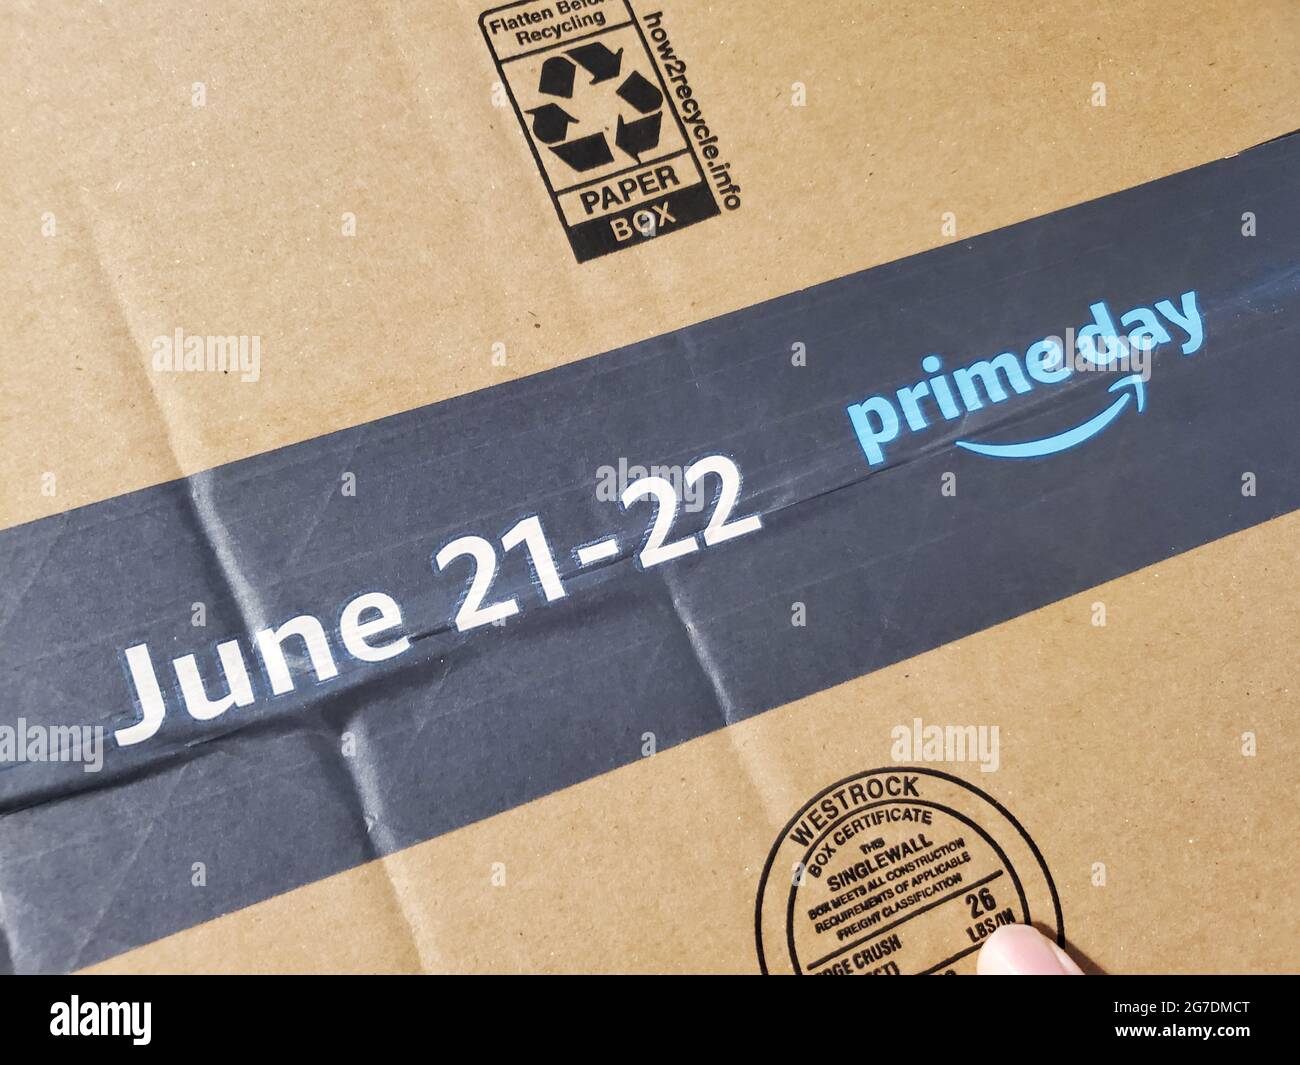 Gros plan du ruban d'emballage sur la boîte d'expédition Amazon, avec le logo pour le premier jour 2021 et les dates du 21-22 juin pour la journée de magasinage populaire, avec une partie de la main visible sur la boîte, Lafayette, Californie, 13 juin 2021. () Banque D'Images